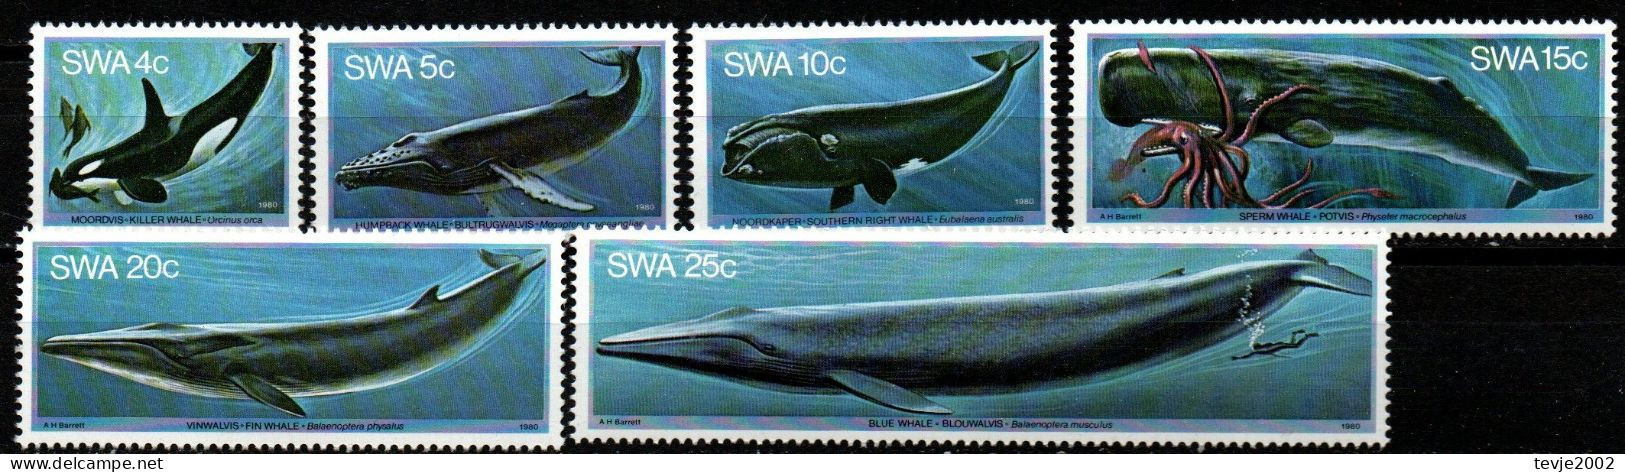 Südwestafrika 1980 - Mi.Nr. 466 - 471 - Postfrisch MNH - Tiere Animals Wale Whales - Whales